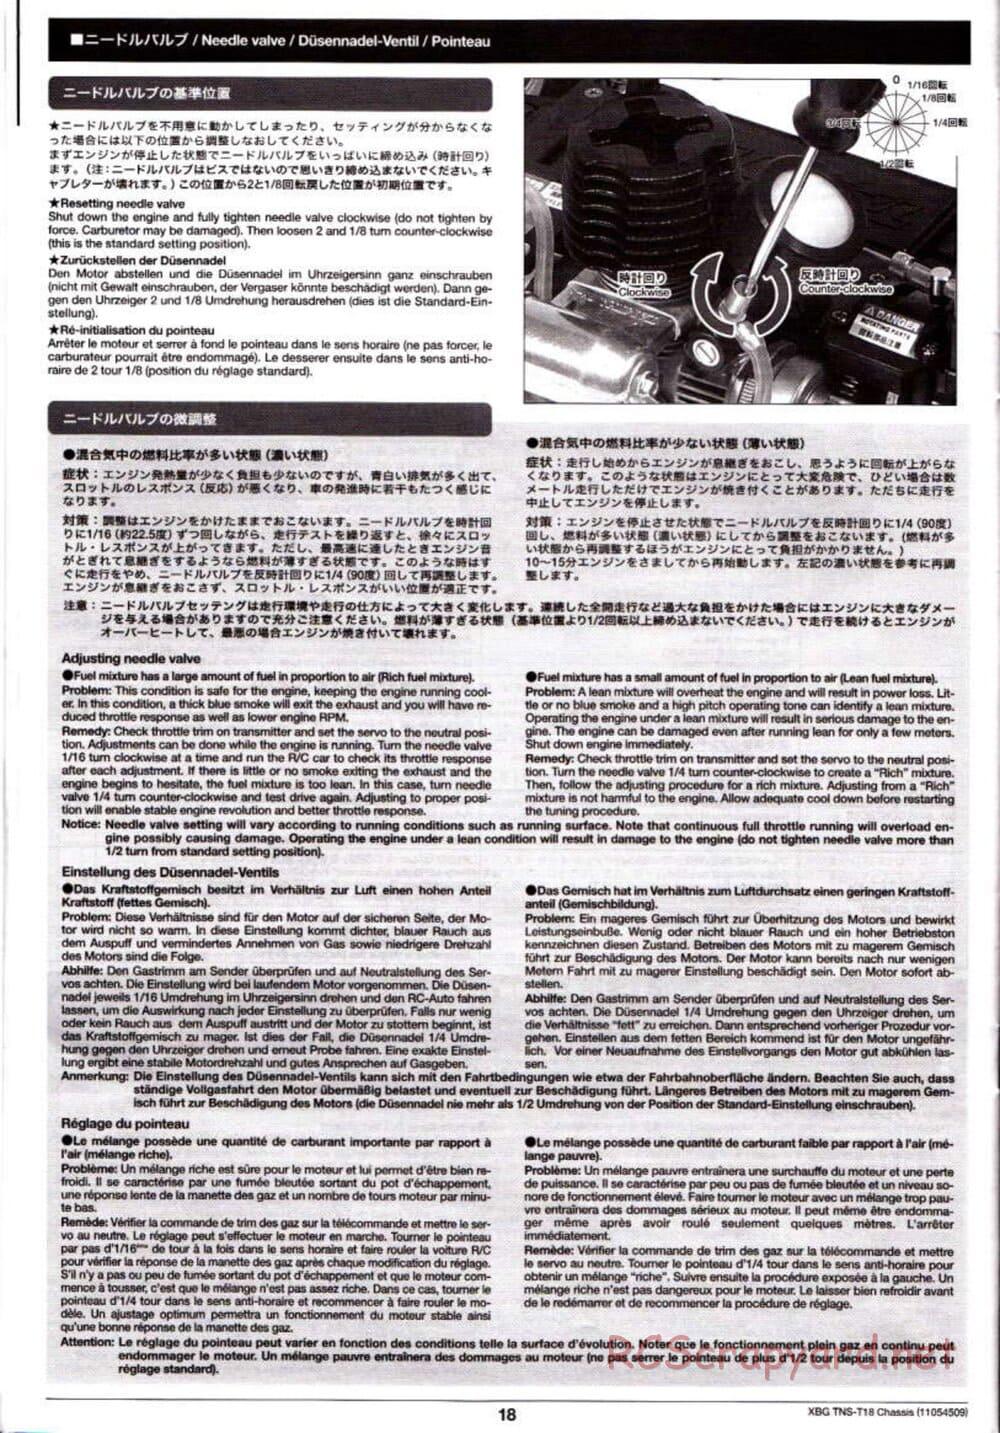 Tamiya - TNS-T18 Chassis - Manual - Page 18